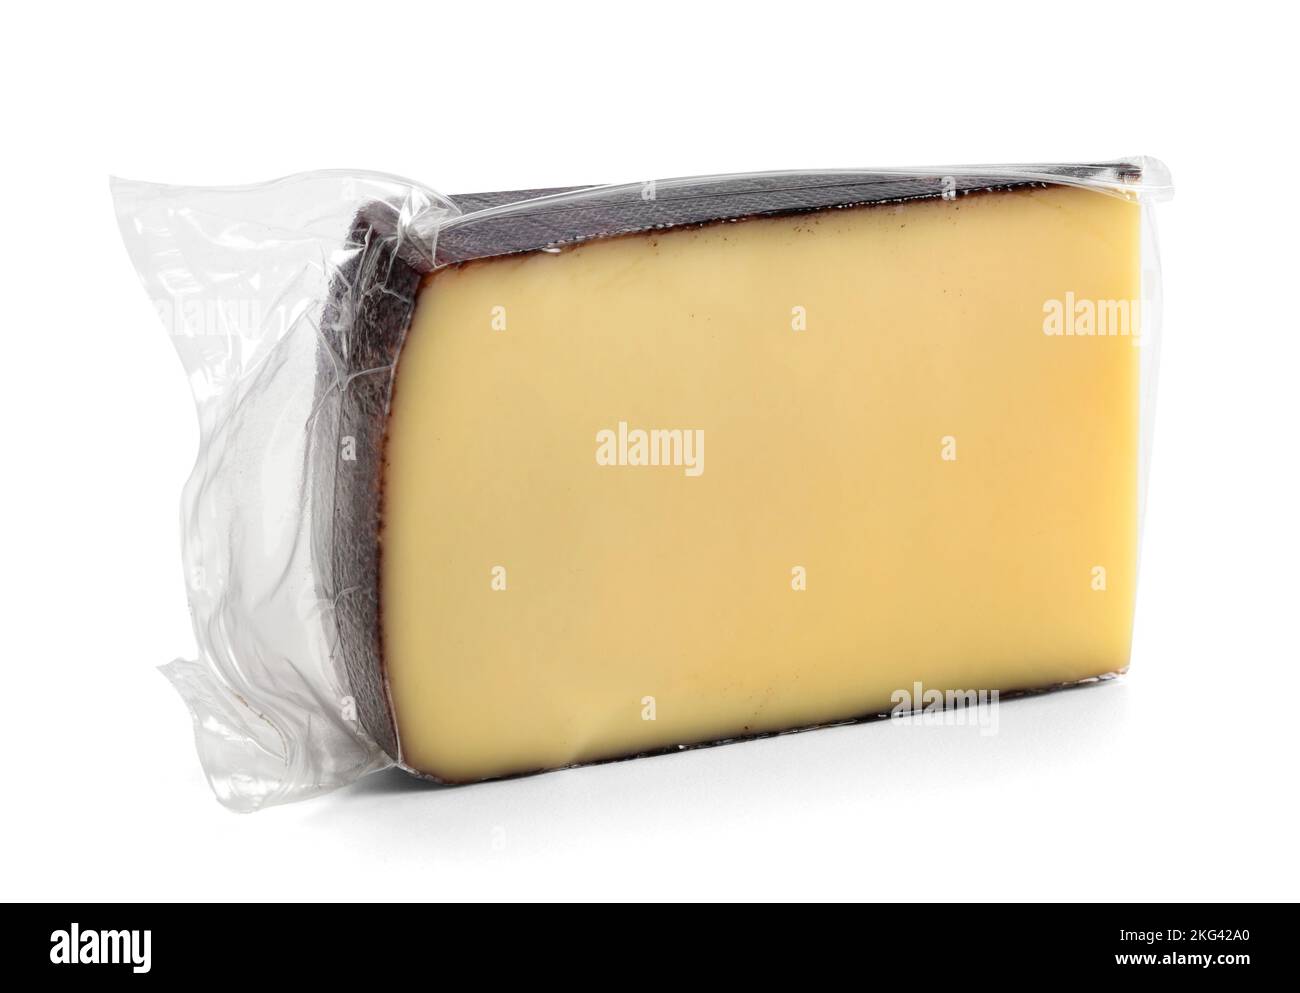 Pedazo de delicioso queso fresco en envase de plástico al vacío aislado sobre fondo blanco Foto de stock